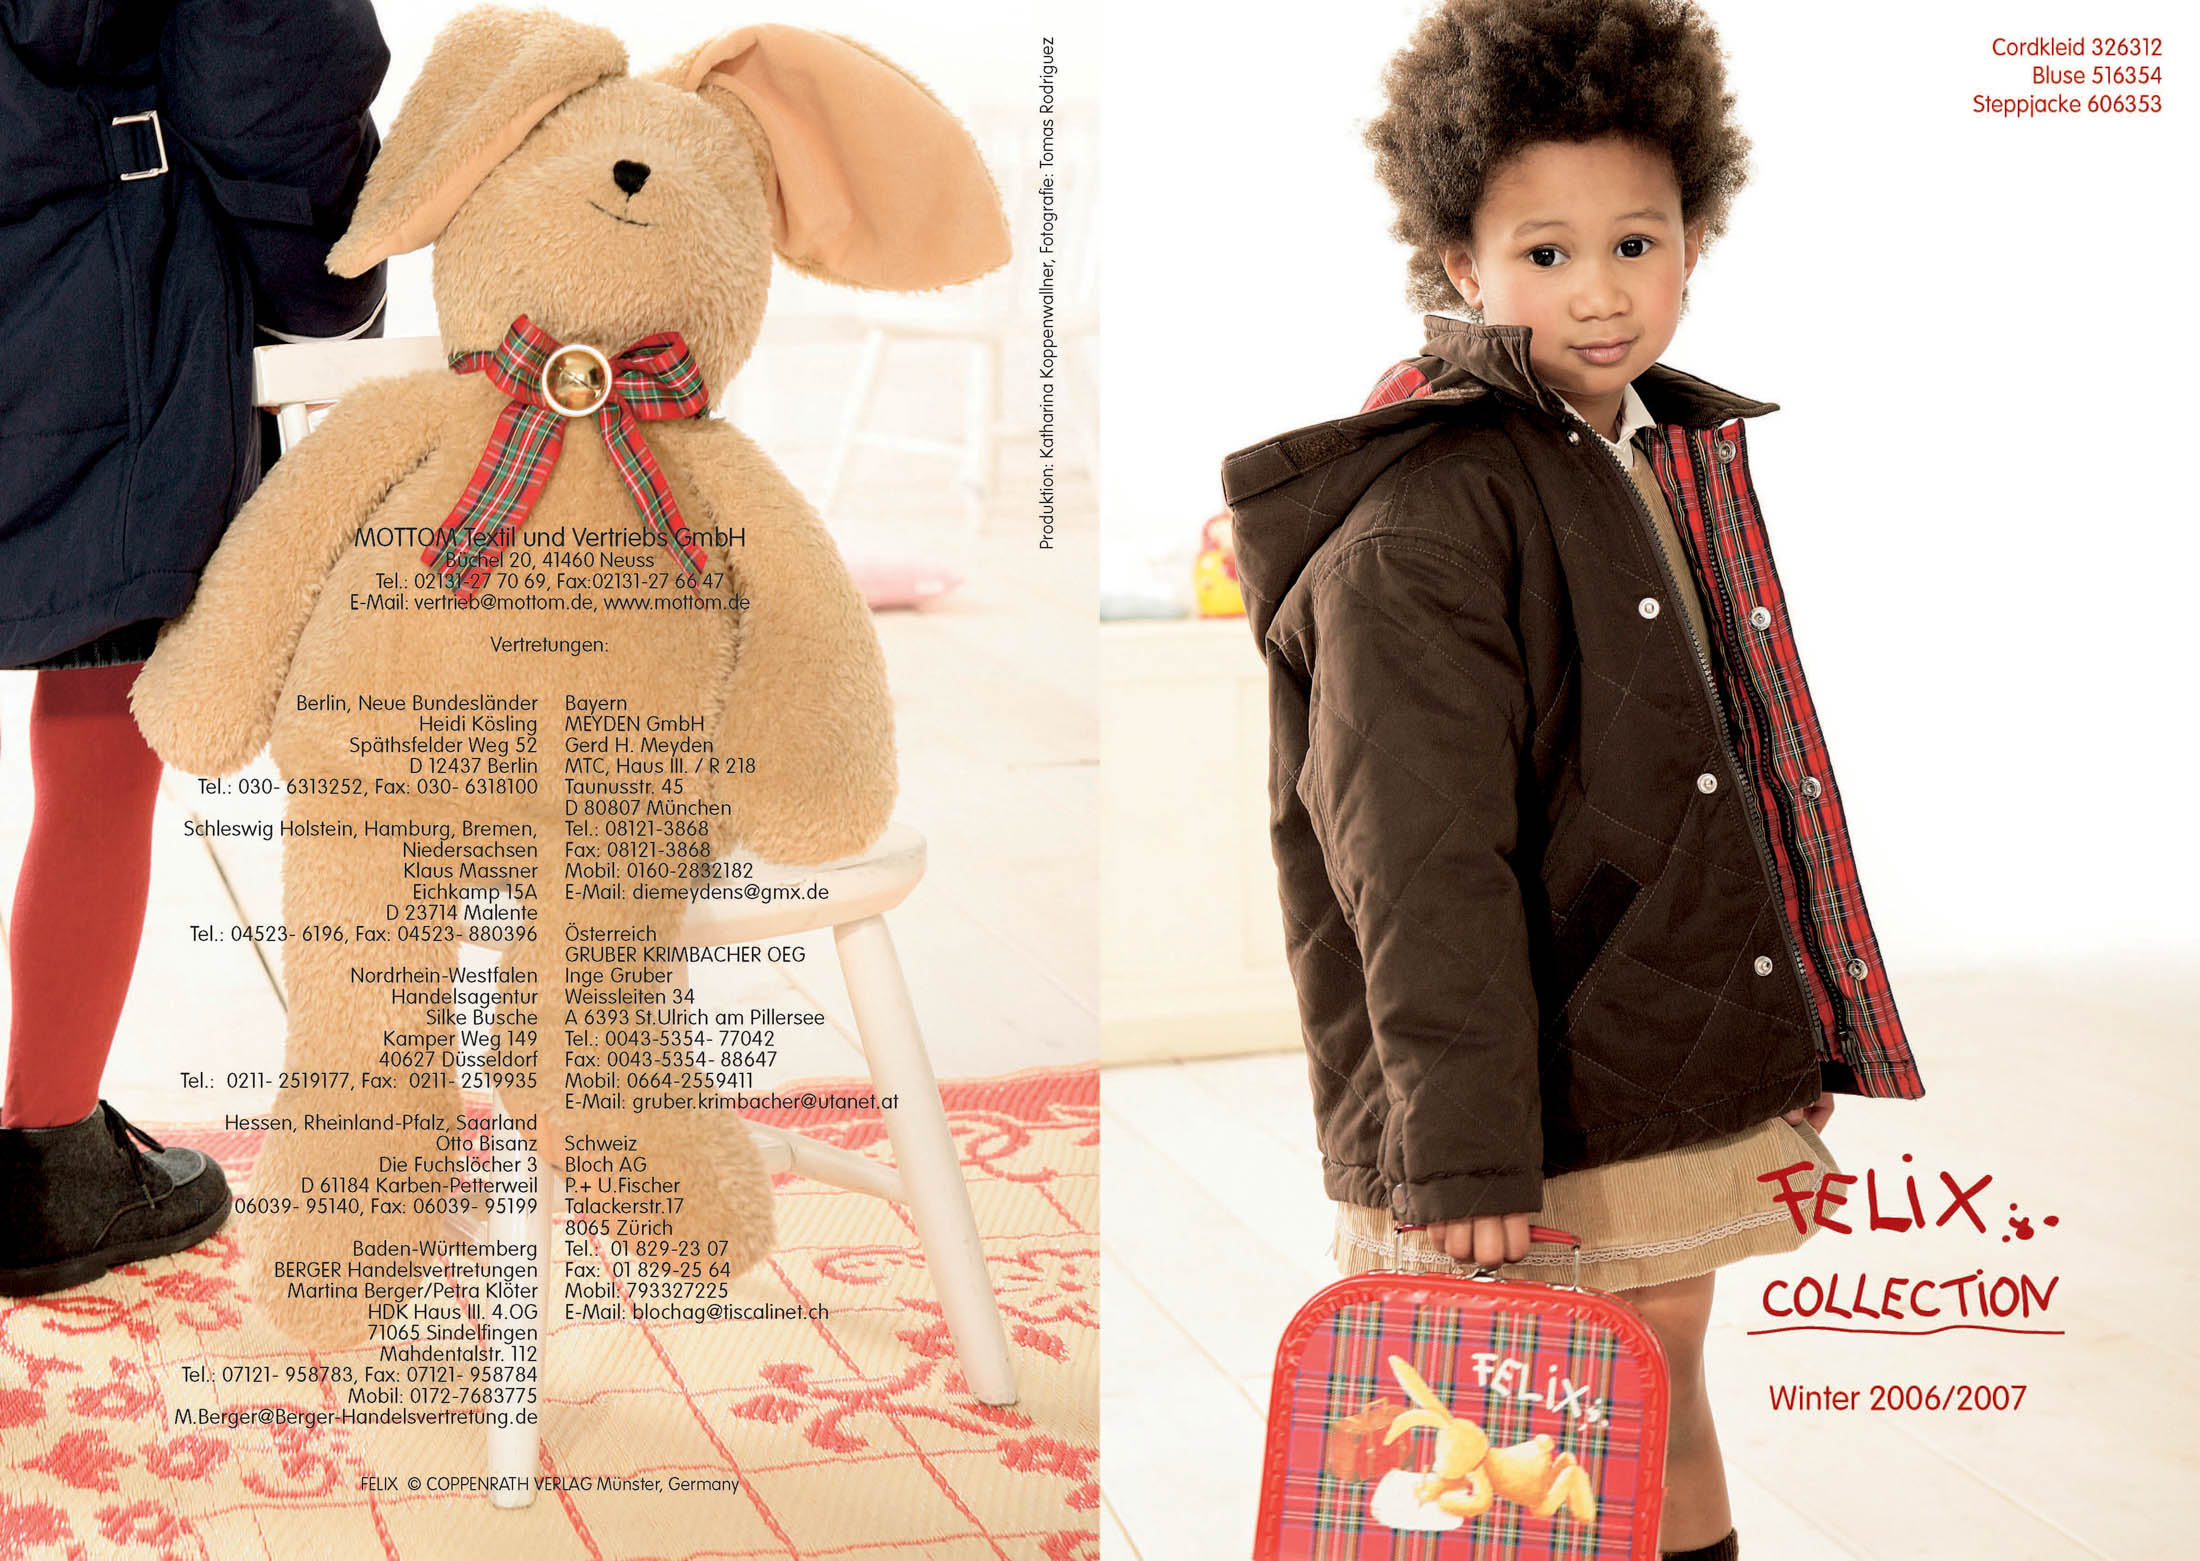 Ein kleines Kind präsentiert eine schicke braune Jacke und hält einen Rucksack mit bunten Cartoon-Motiven in der Hand. Im Hintergrund ist ein weichgezeichneter Blick auf einen Raum mit warmer Beleuchtung zu sehen. © Fotografie Tomas Rodriguez